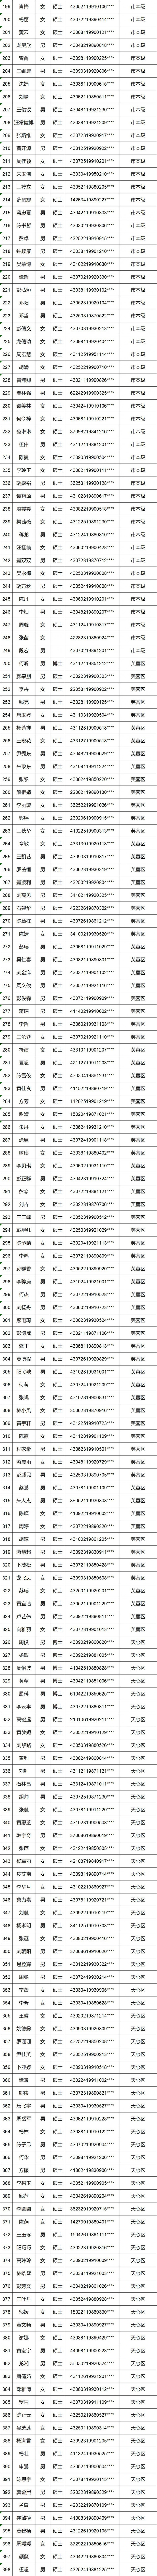 长沙购房补贴名单（2018年9月-2018年11月）